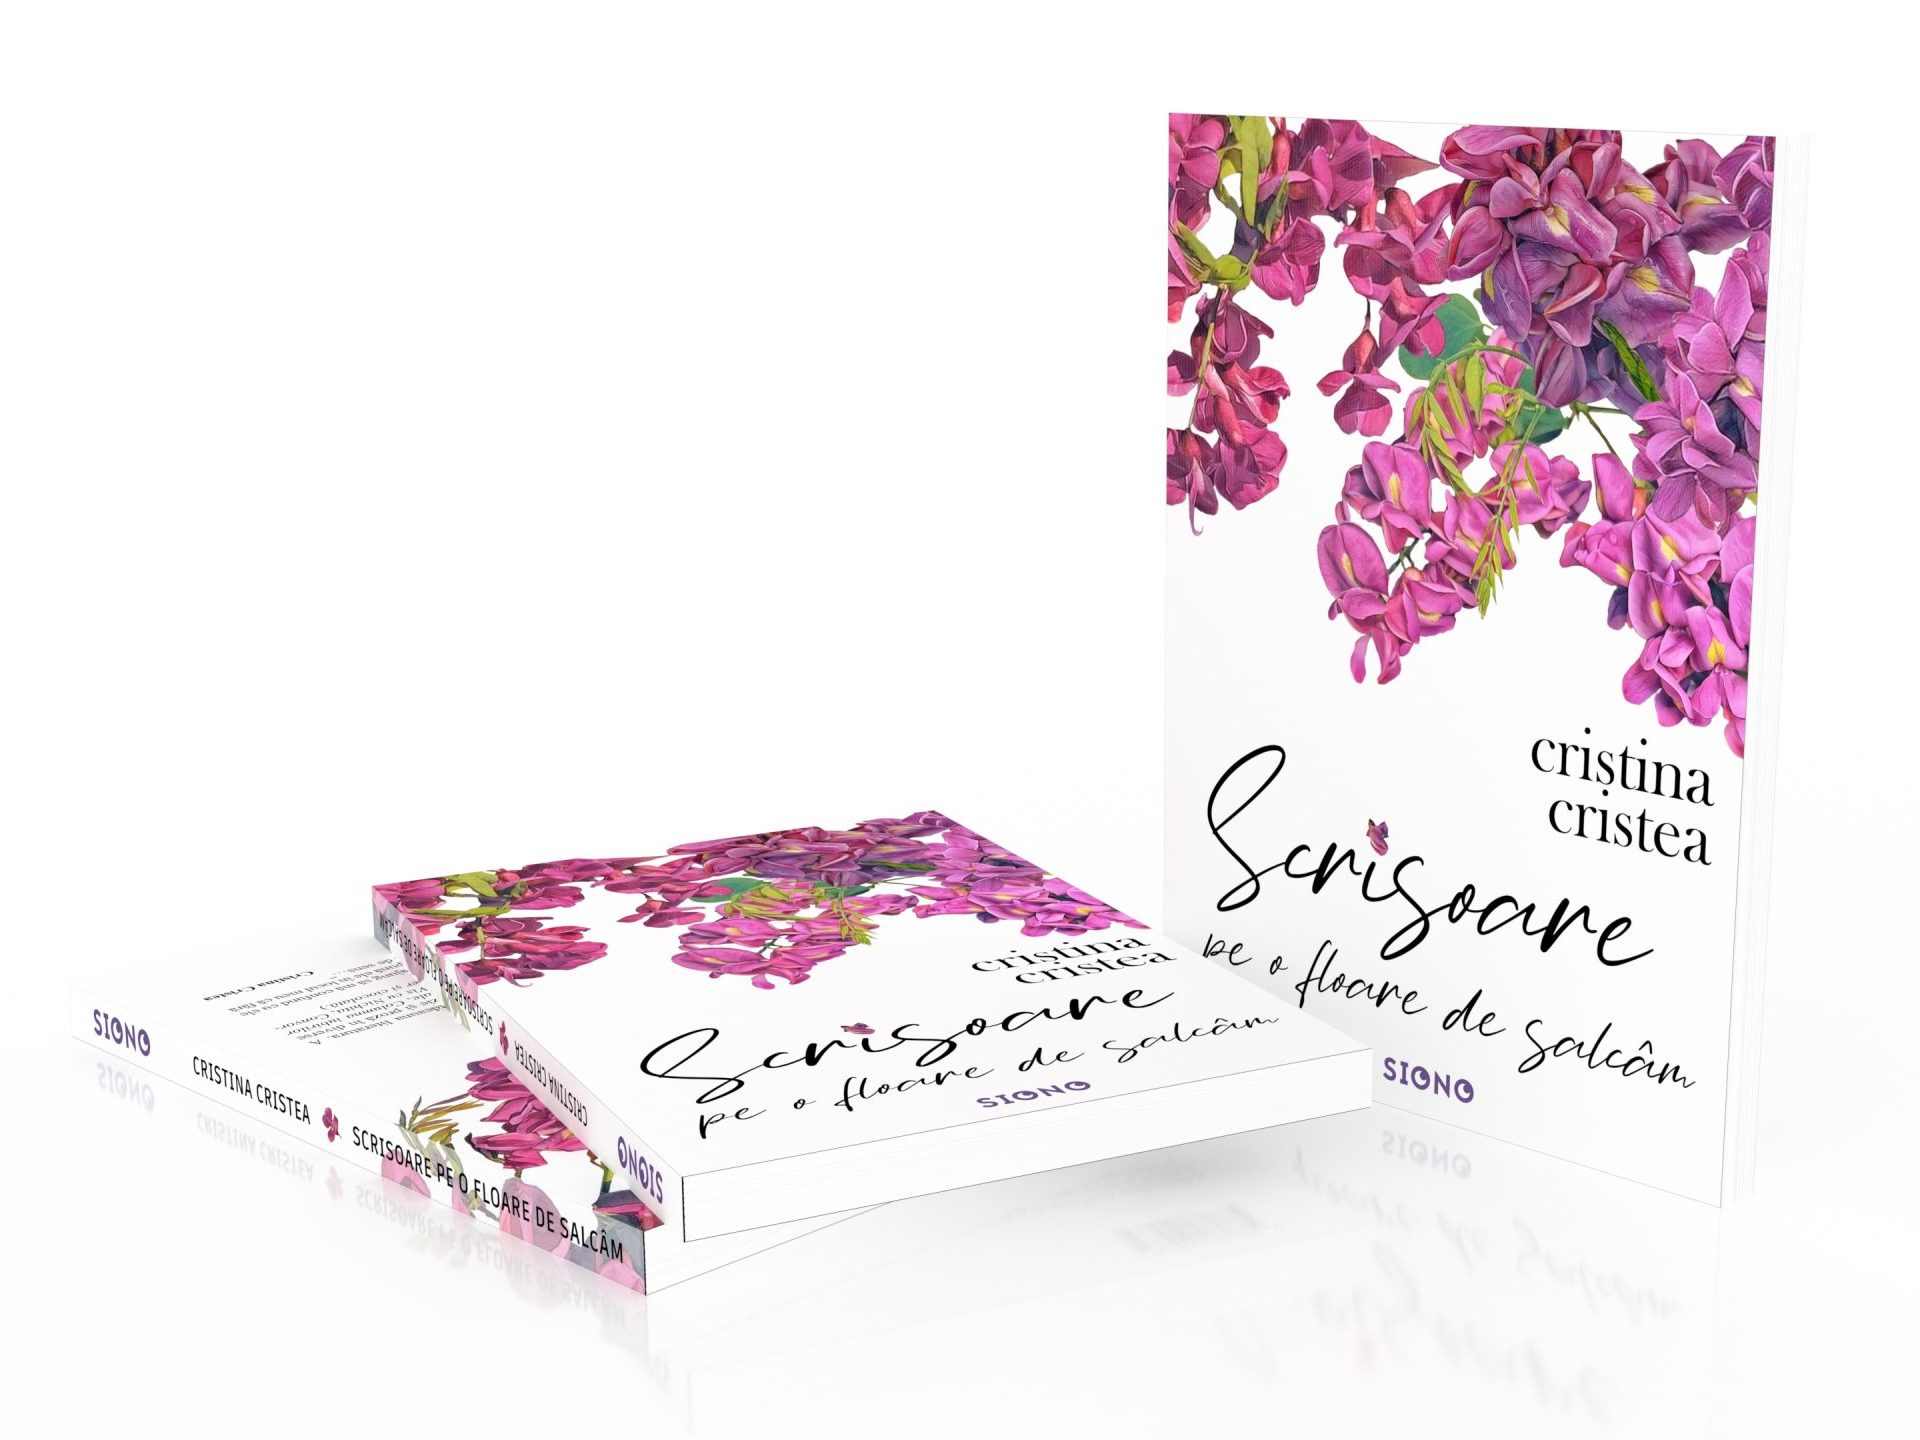 Scrisoare pe o floare de salcâm - Cristina Cristea (SIONO Editura)